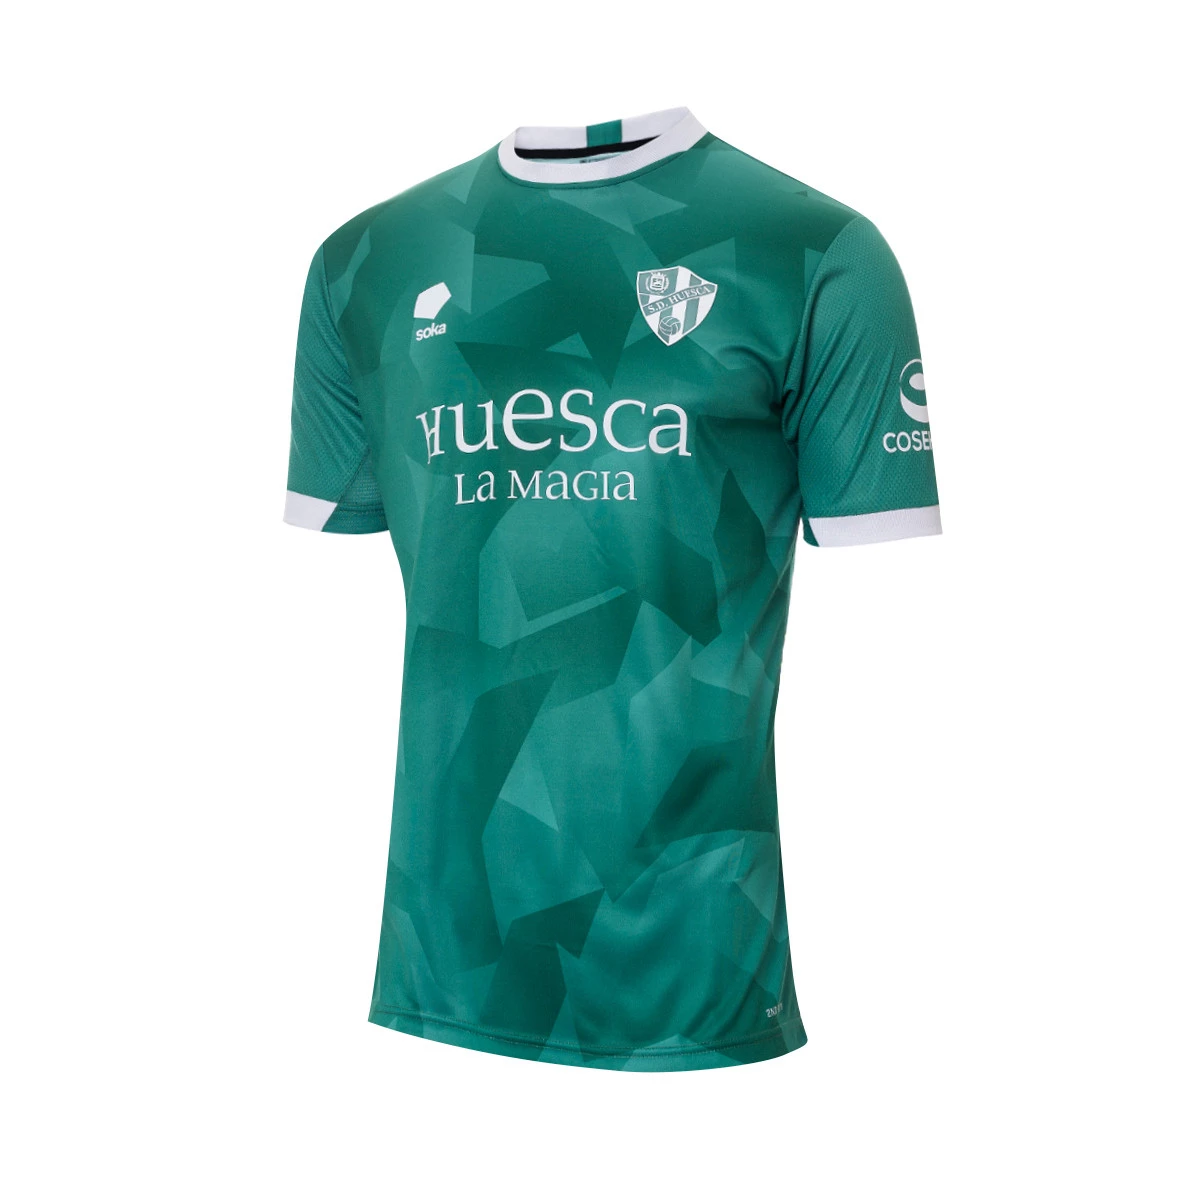 Los equipos no podrán usar camiseta verde a partir de la temporada 22/23